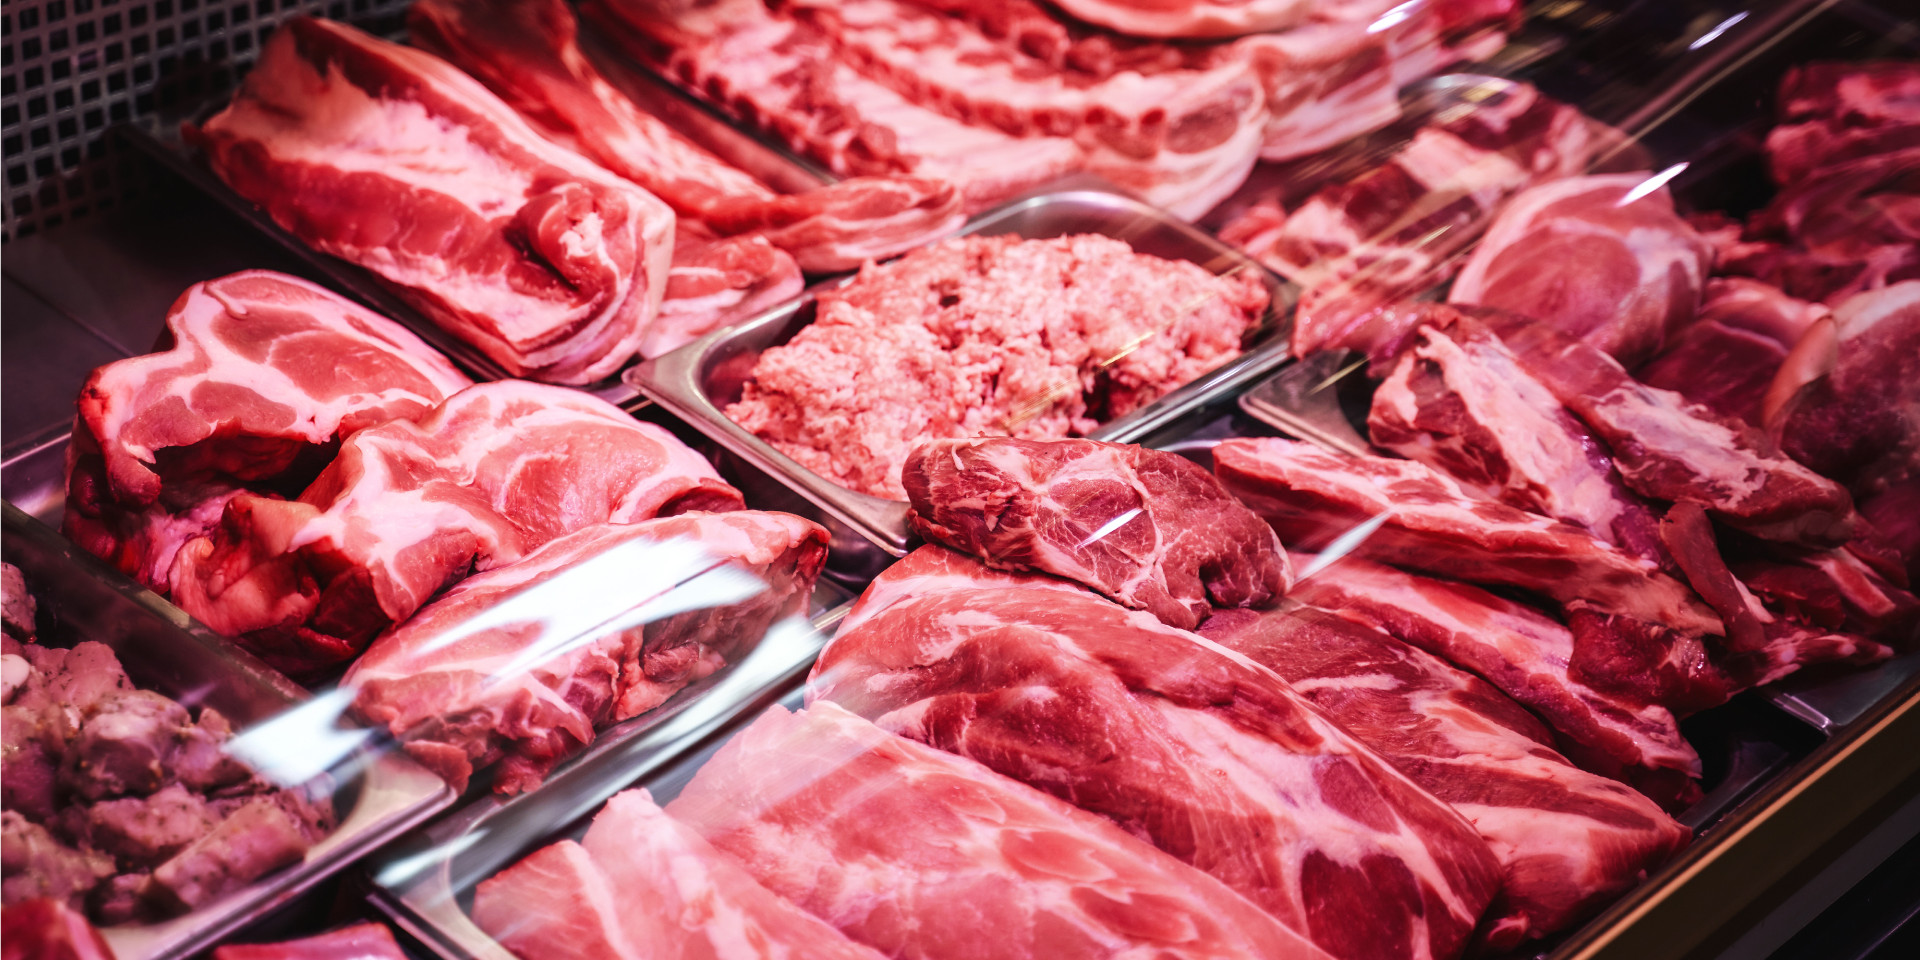 La carne representa el 20% del gasto de los hogares